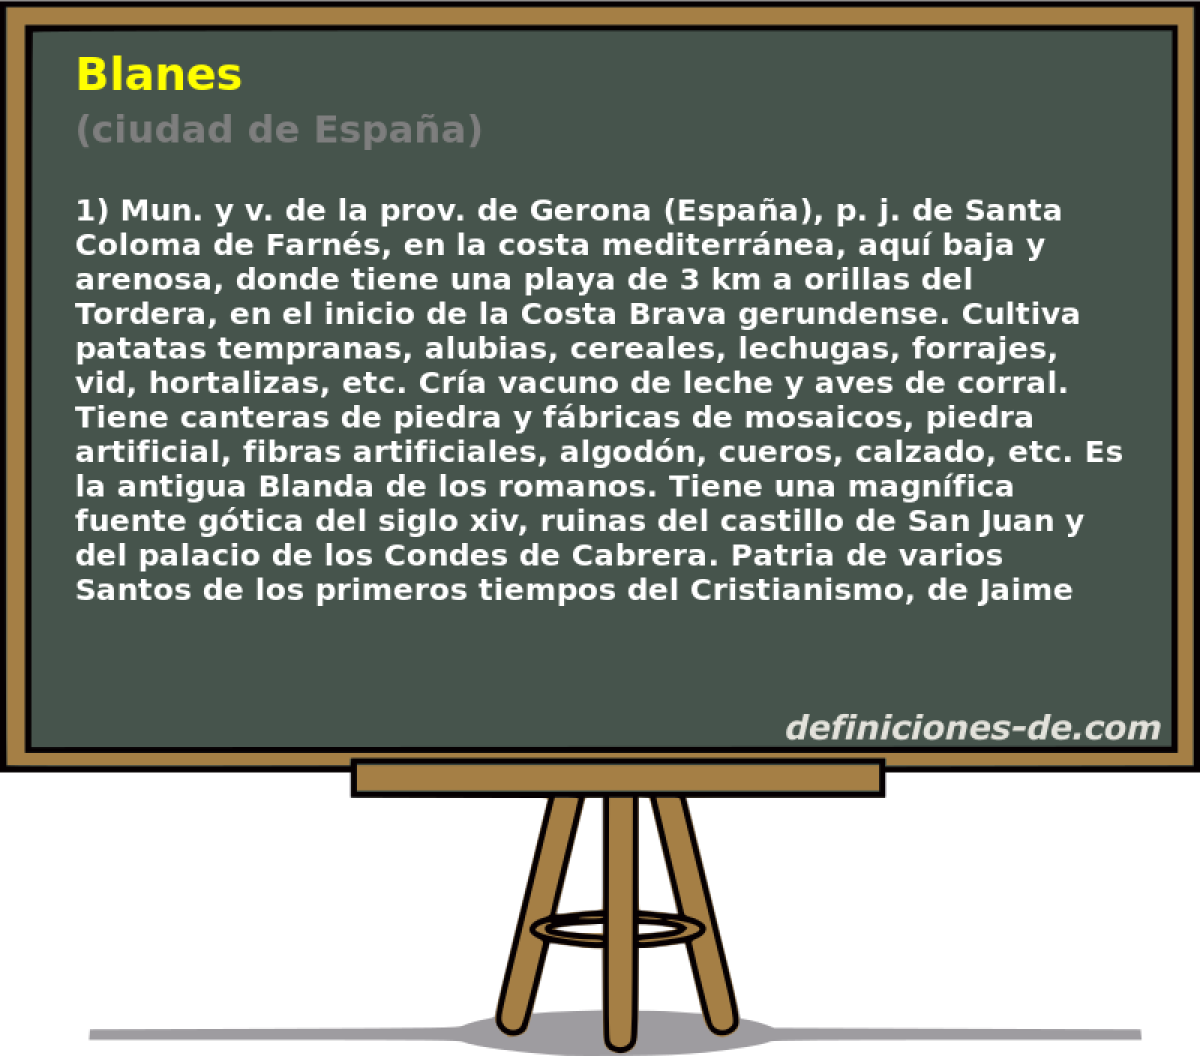 Blanes (ciudad de Espaa)